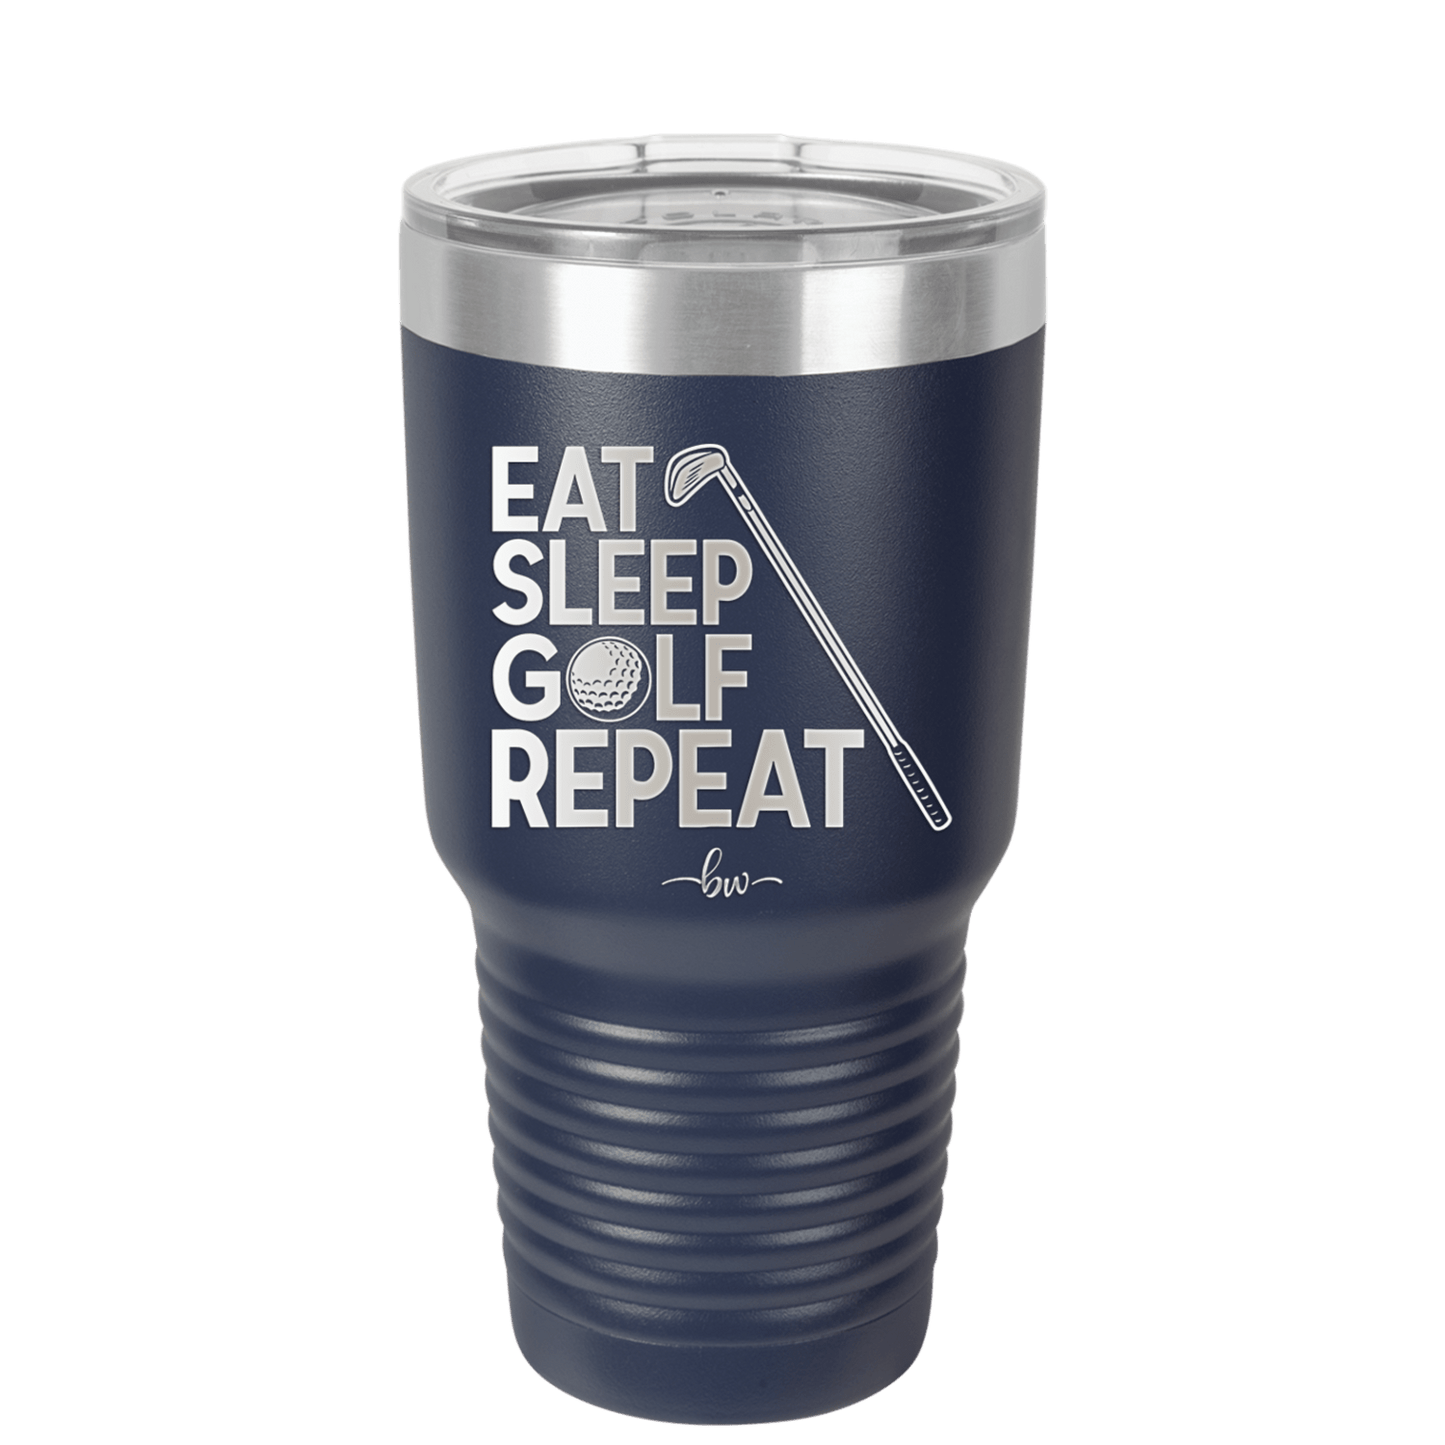 Eat Sleep Golf Repeat 1 - Laser Engraved Stainless Steel Drinkware - 1656 -